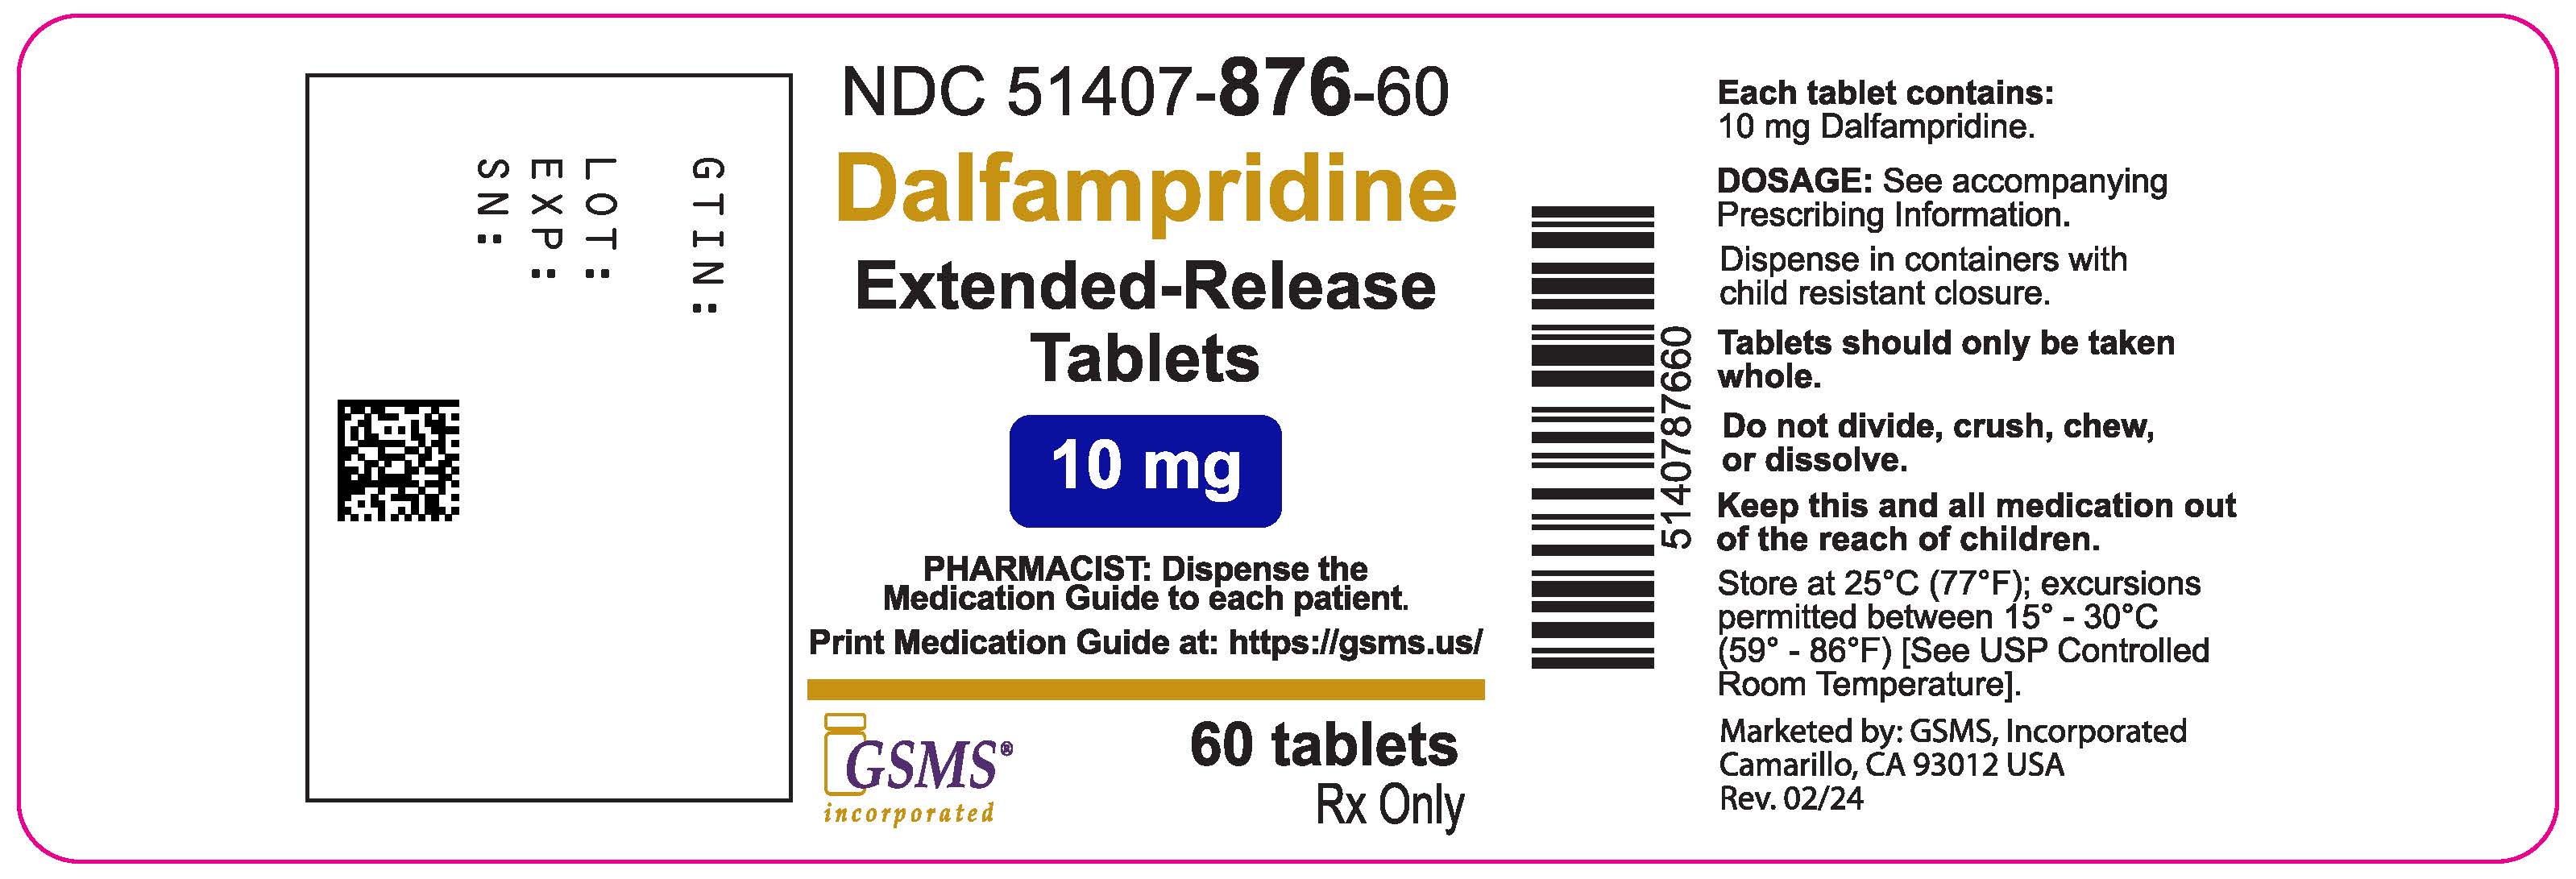 51407-876-60OL - Dalfampridine 10 mg - Rev. 0224.jpg